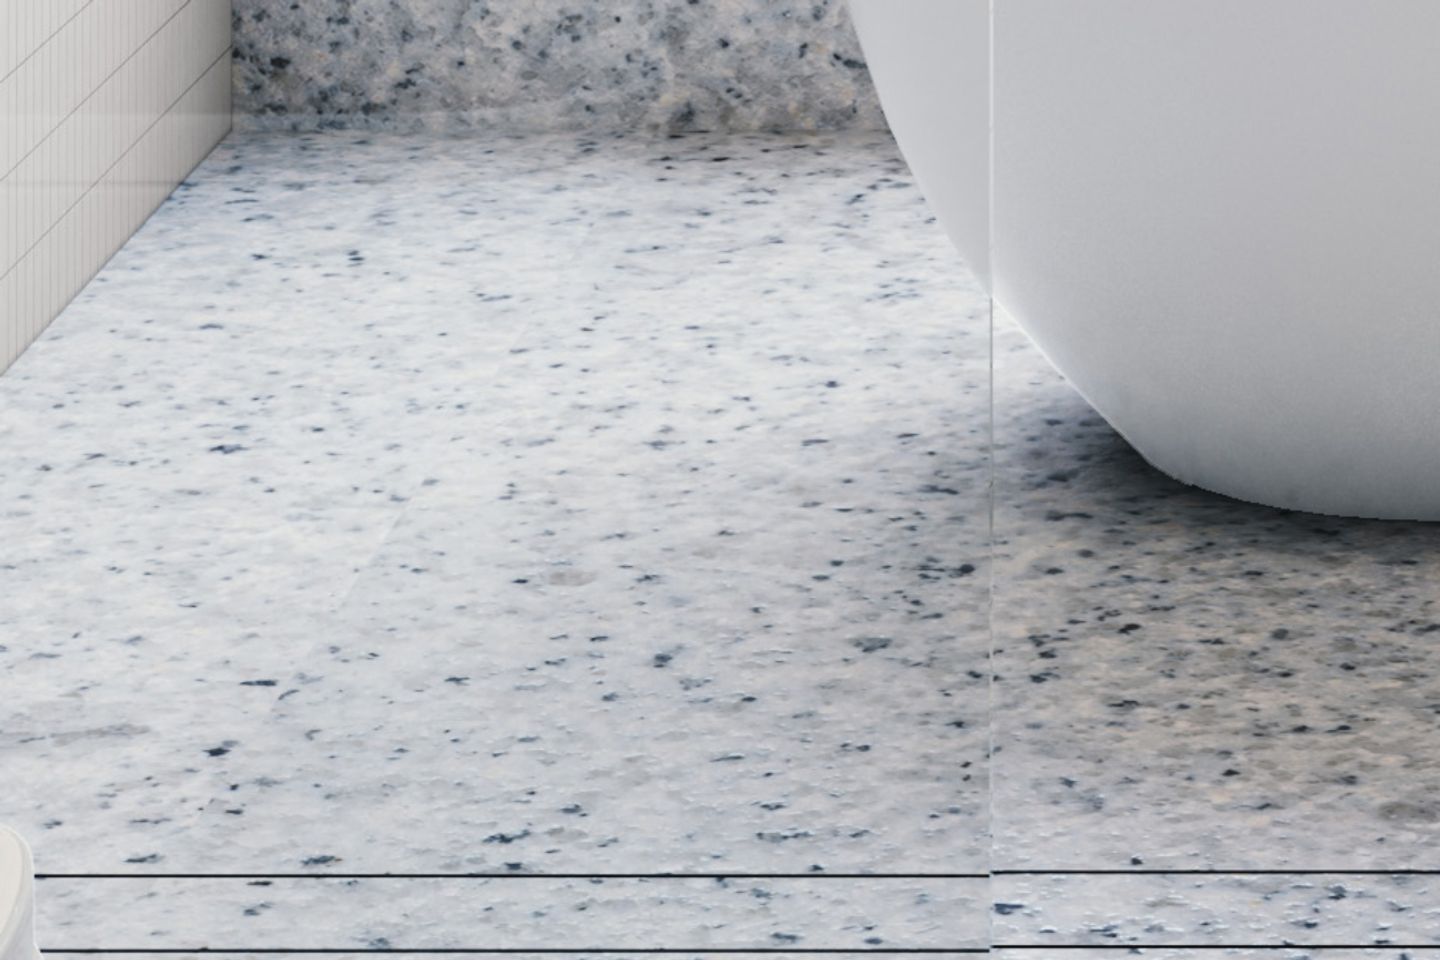 Tricolour Rectangular Tiles For Bathroom Flooring - Livspace